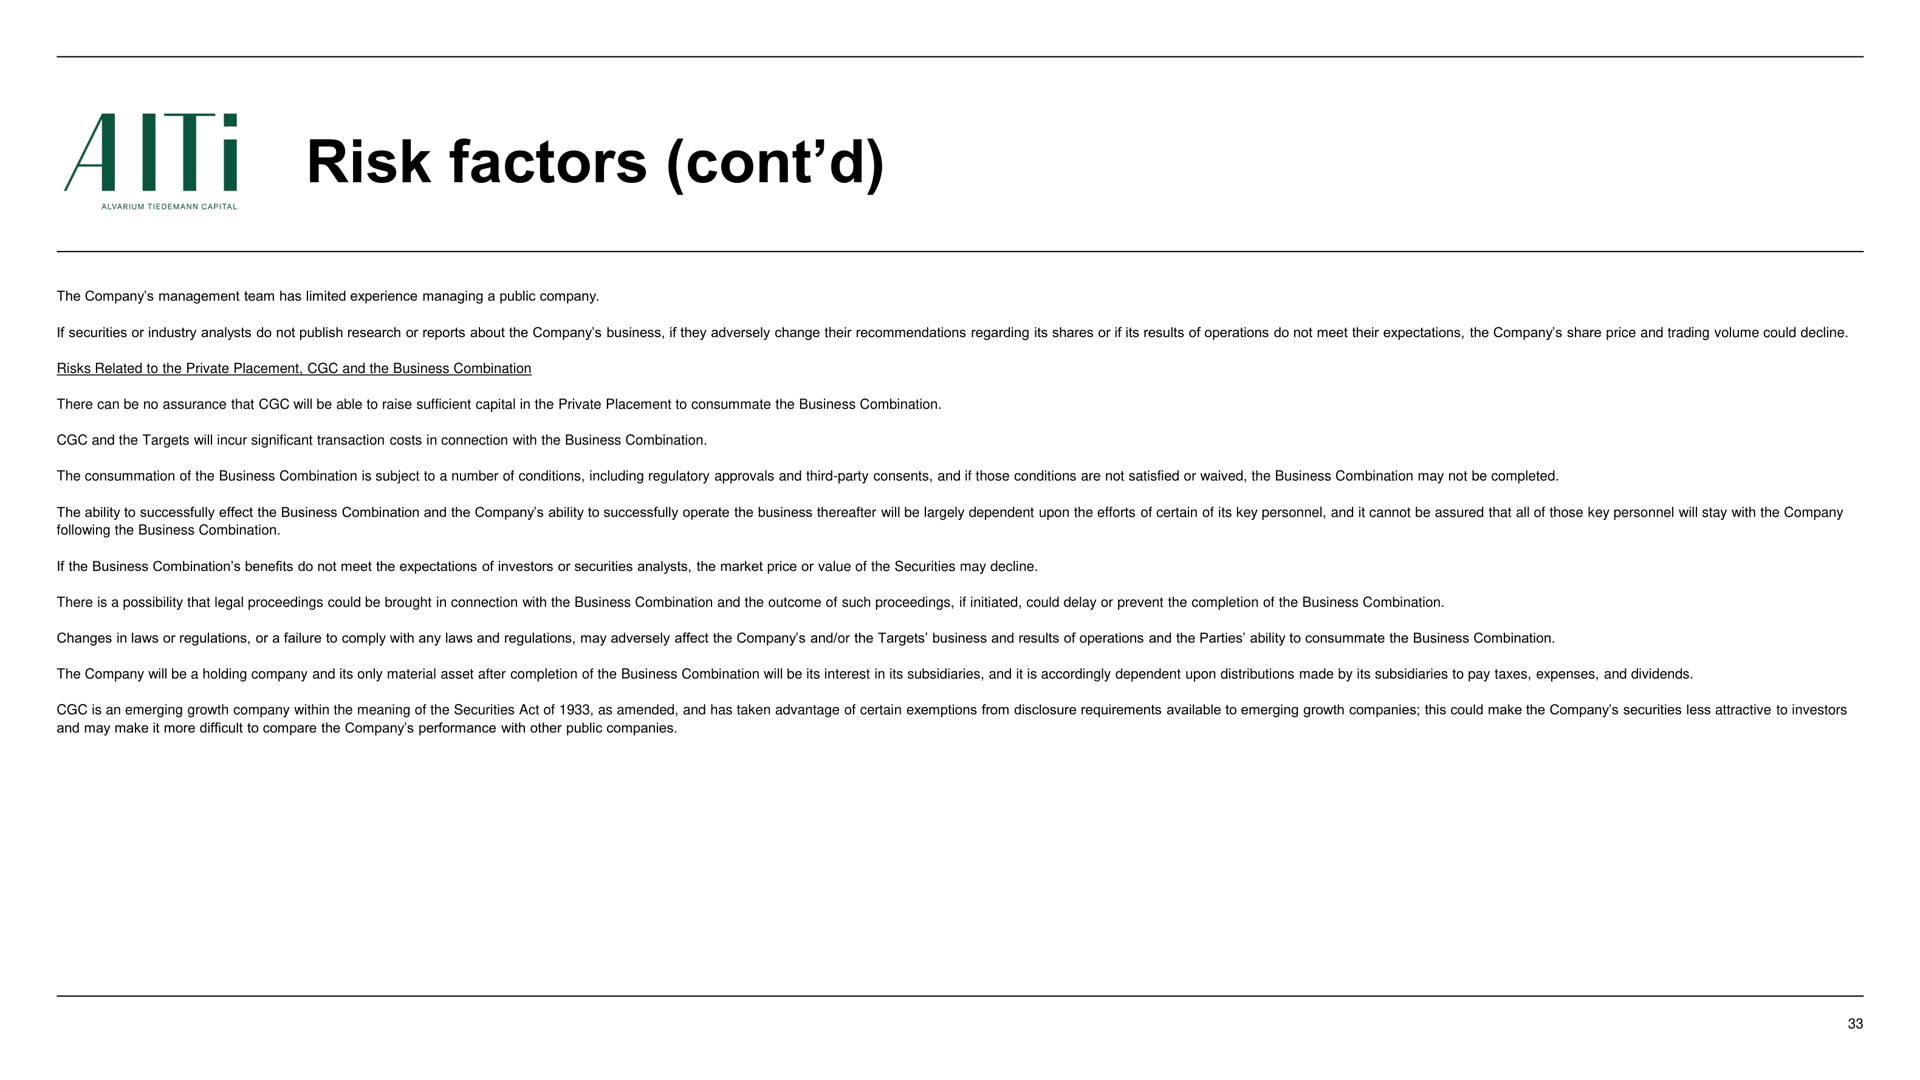 risk factors a | AlTi